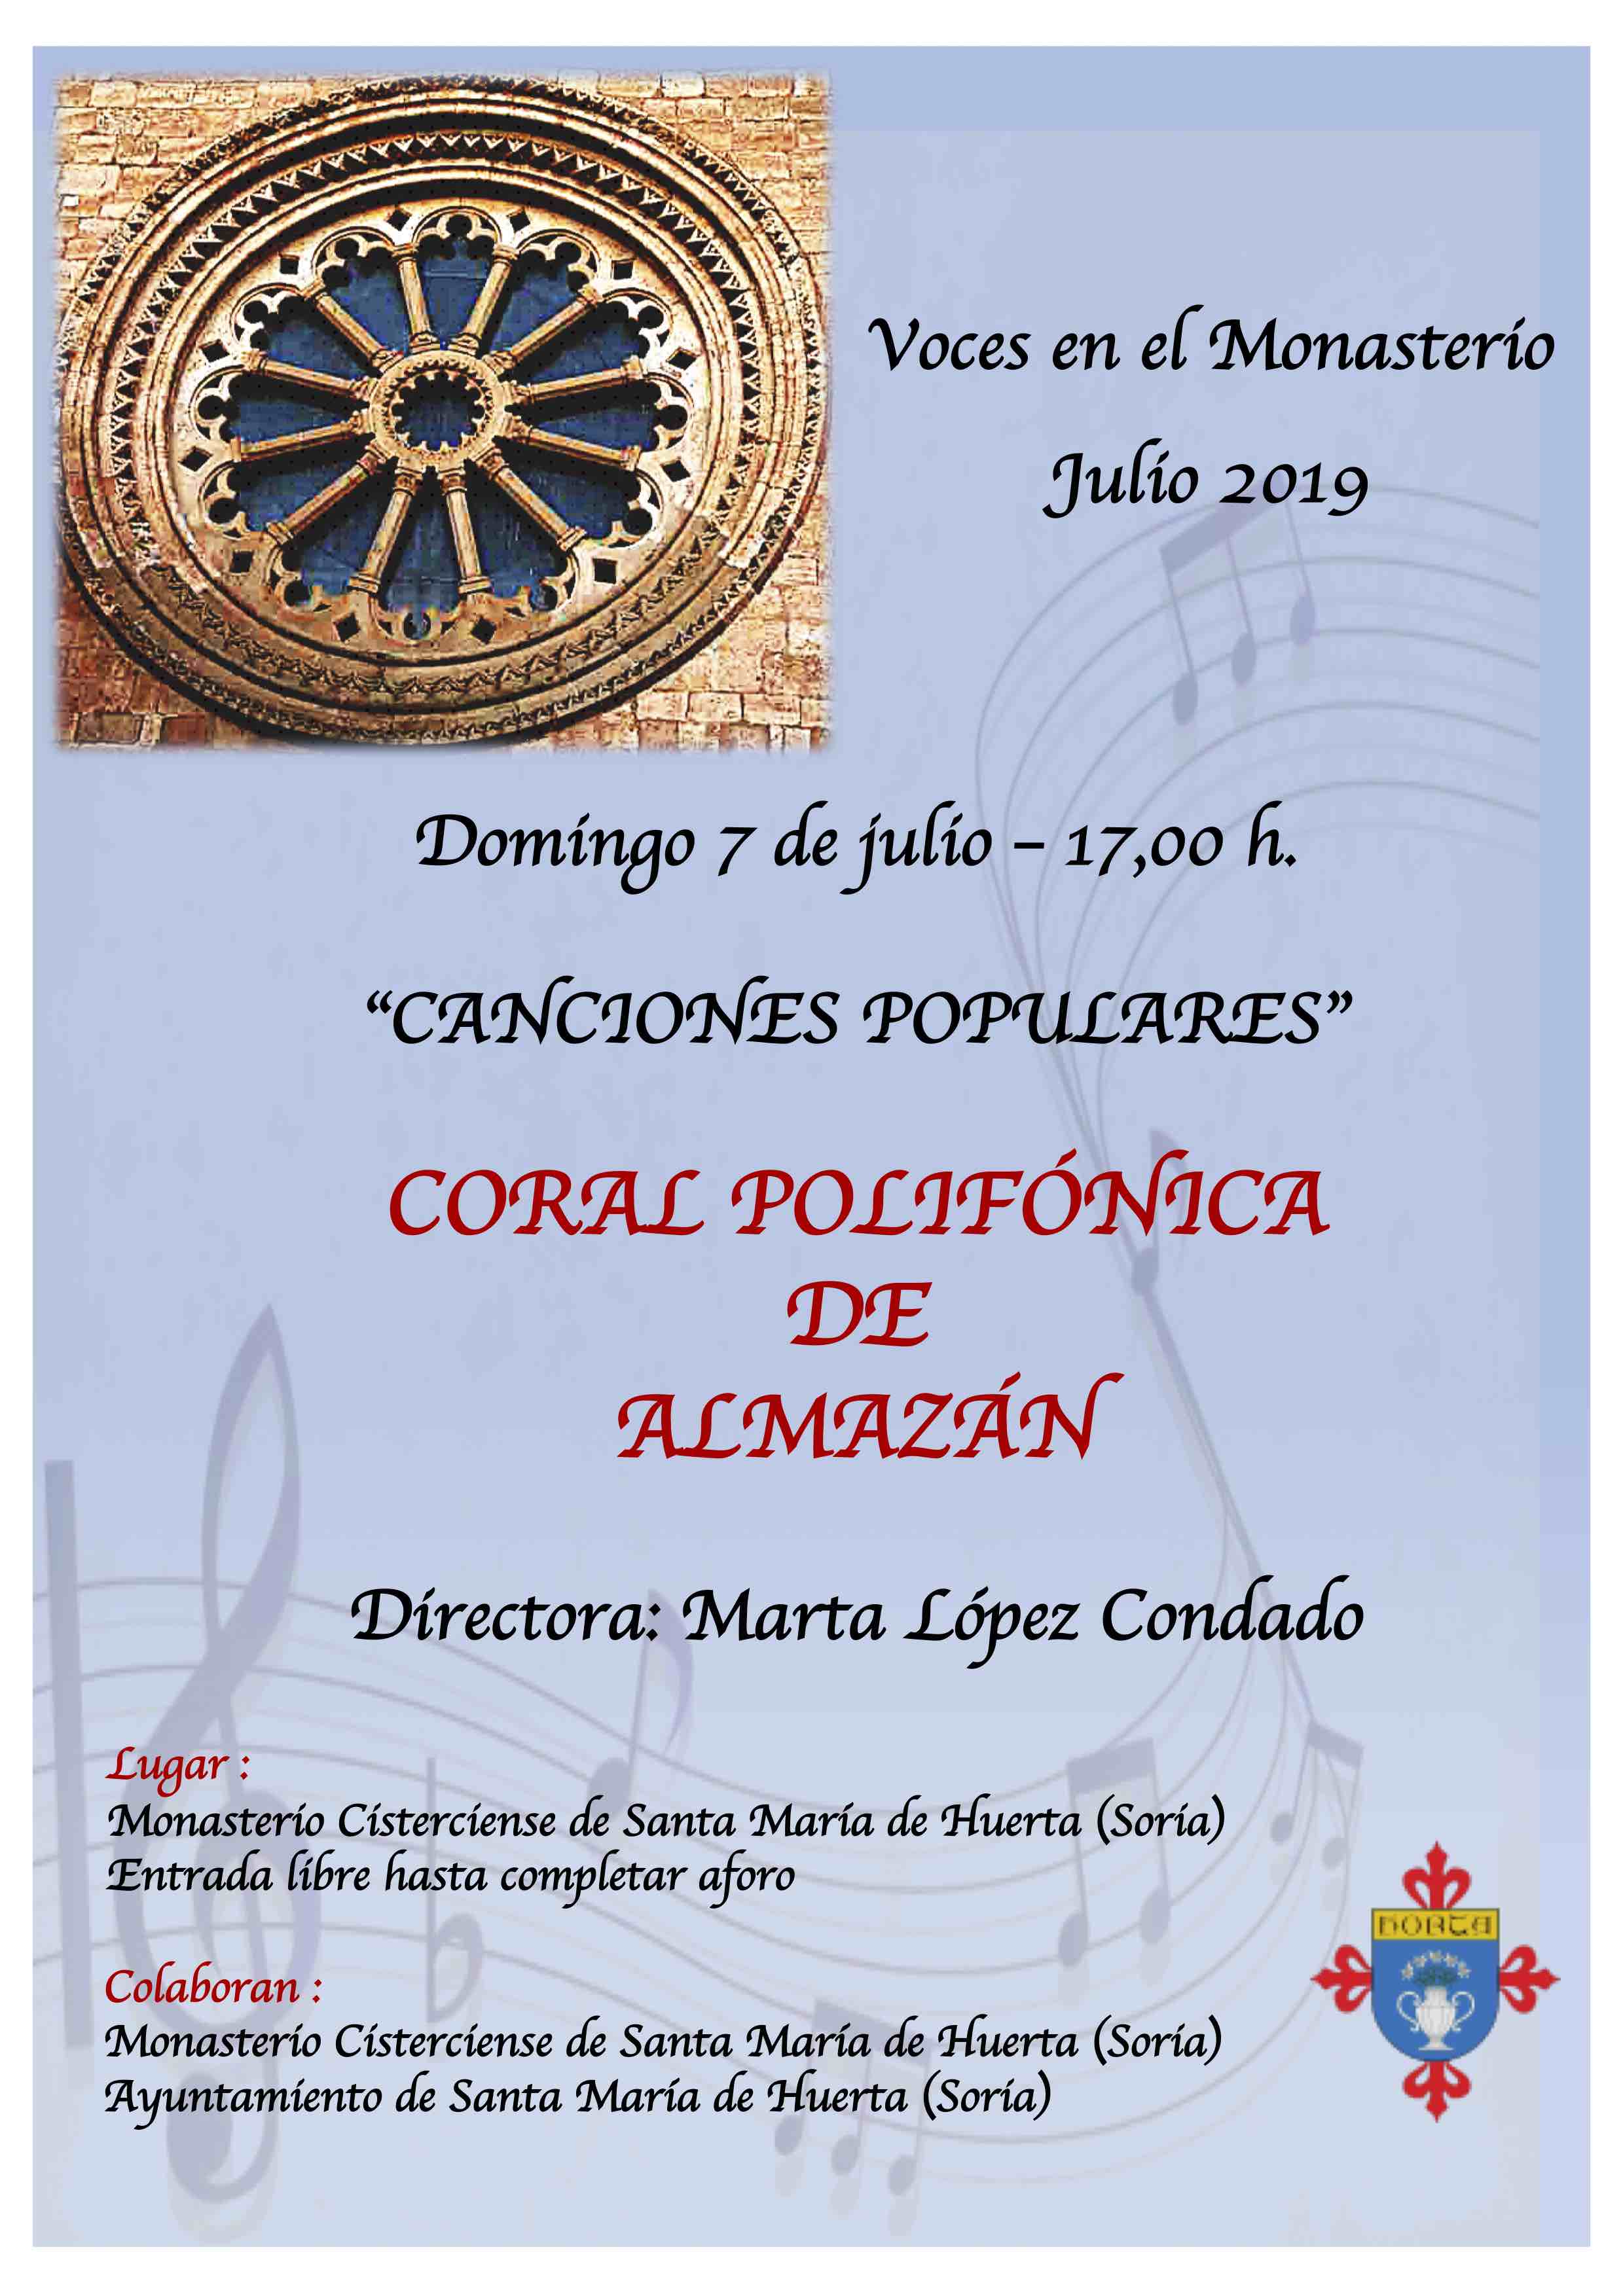 Concierto Coral Polifónica de Almazán en el Monasterio de Santa María de Huerta